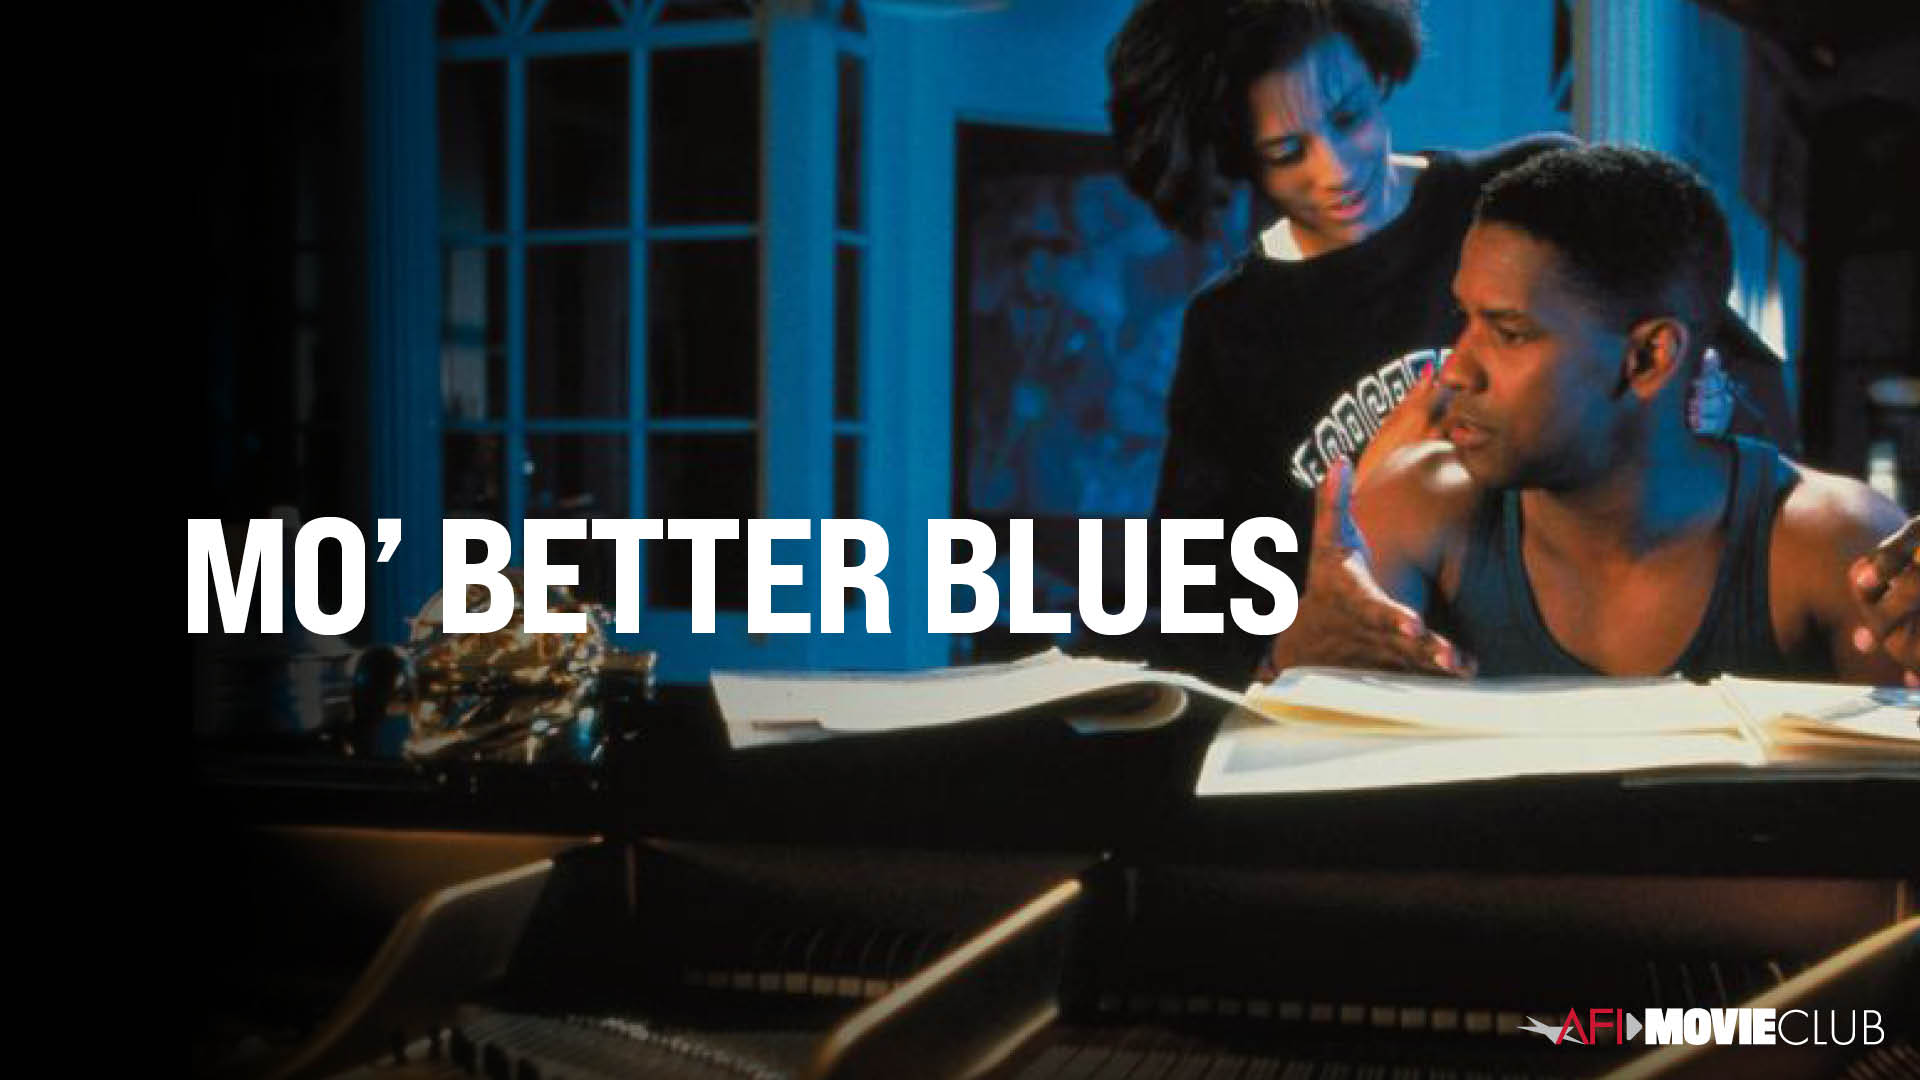 Mo' Better Blues Film Still - Denzel Washington and Cynda Williams